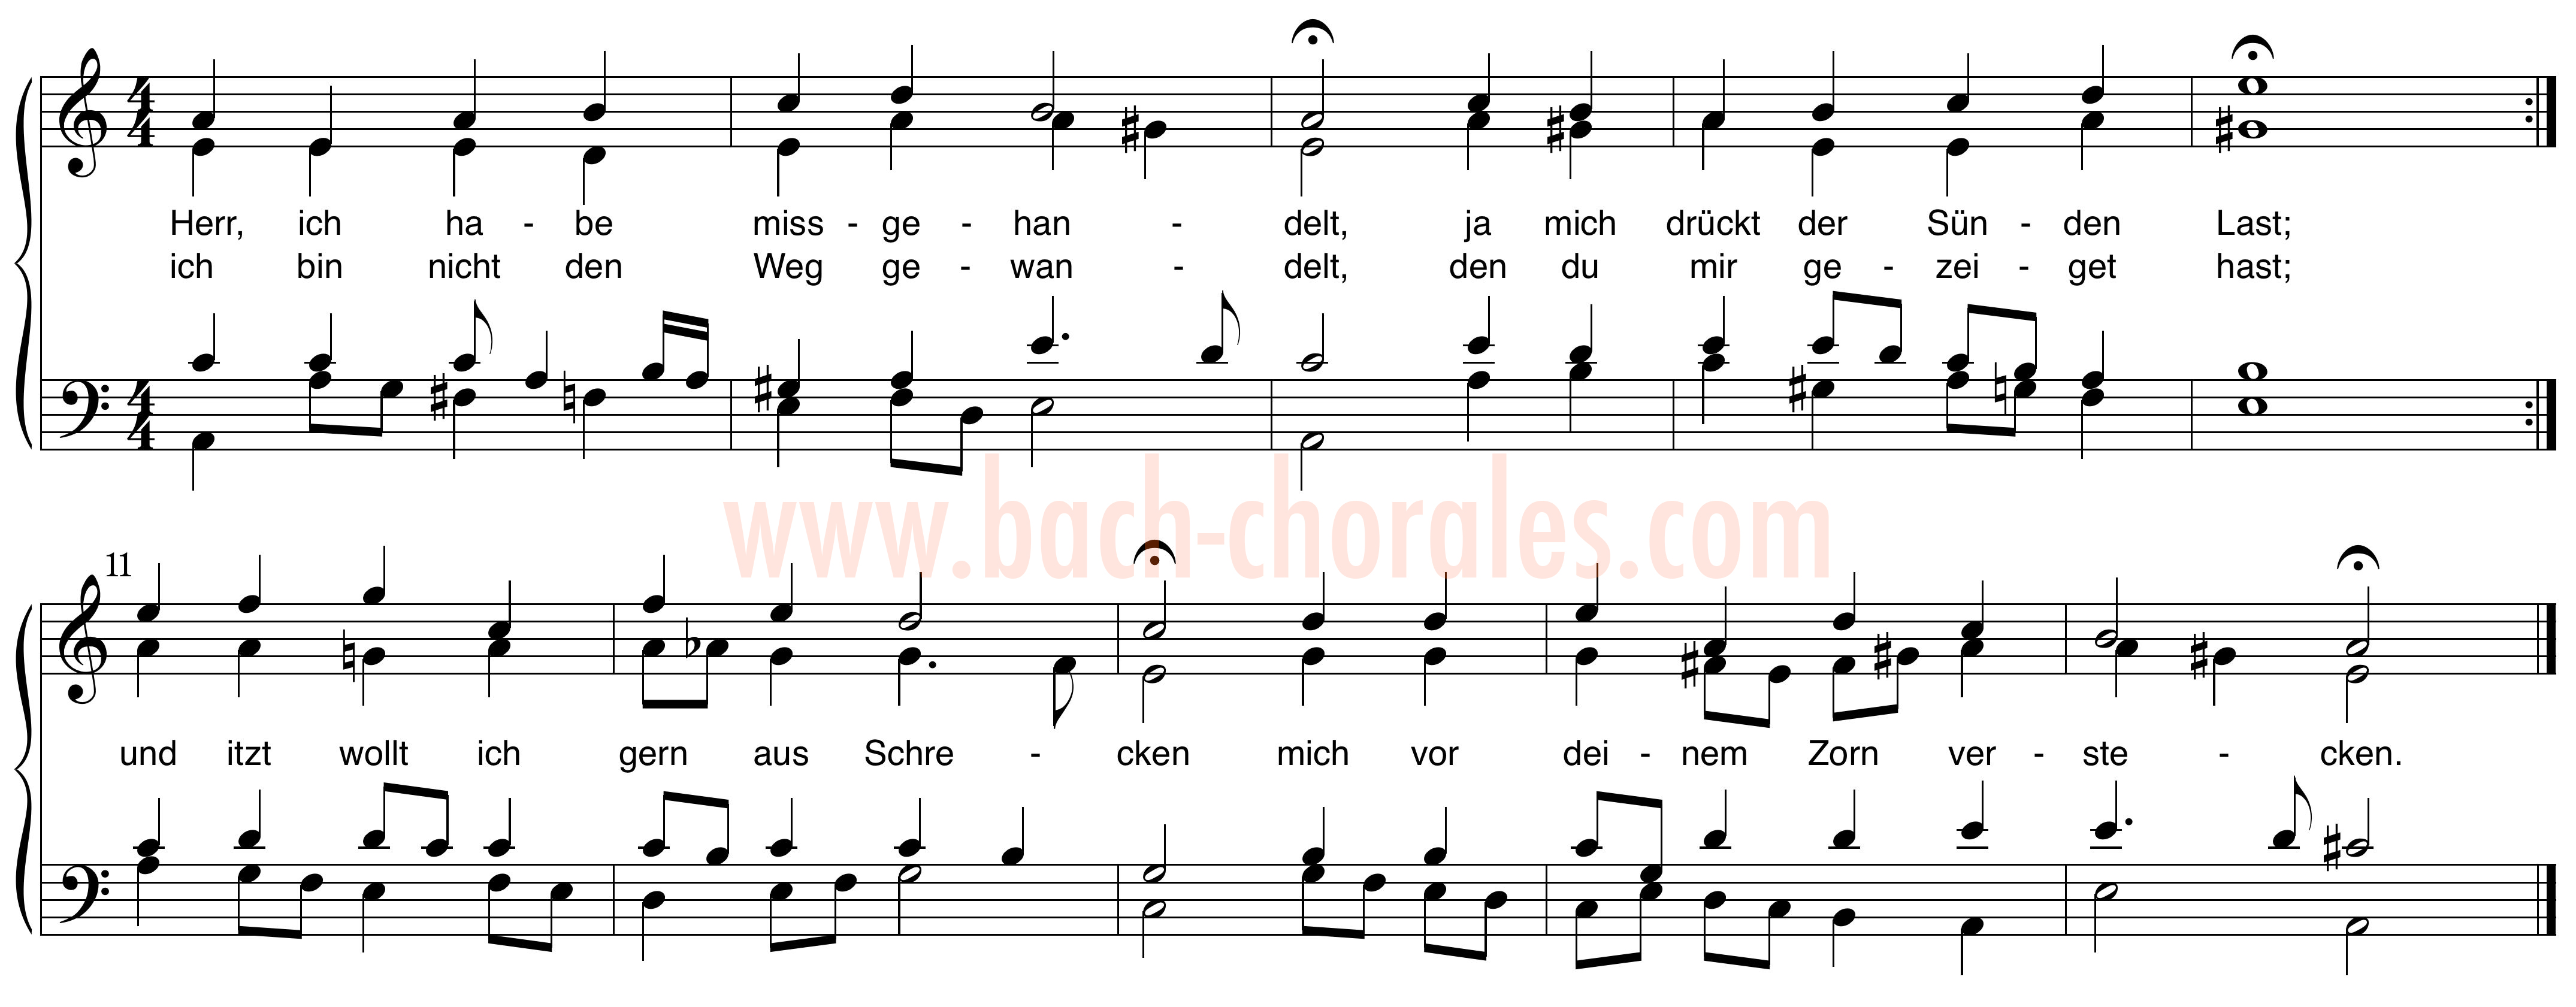 notenbeeld BWV 331 op https://www.bach-chorales.com/